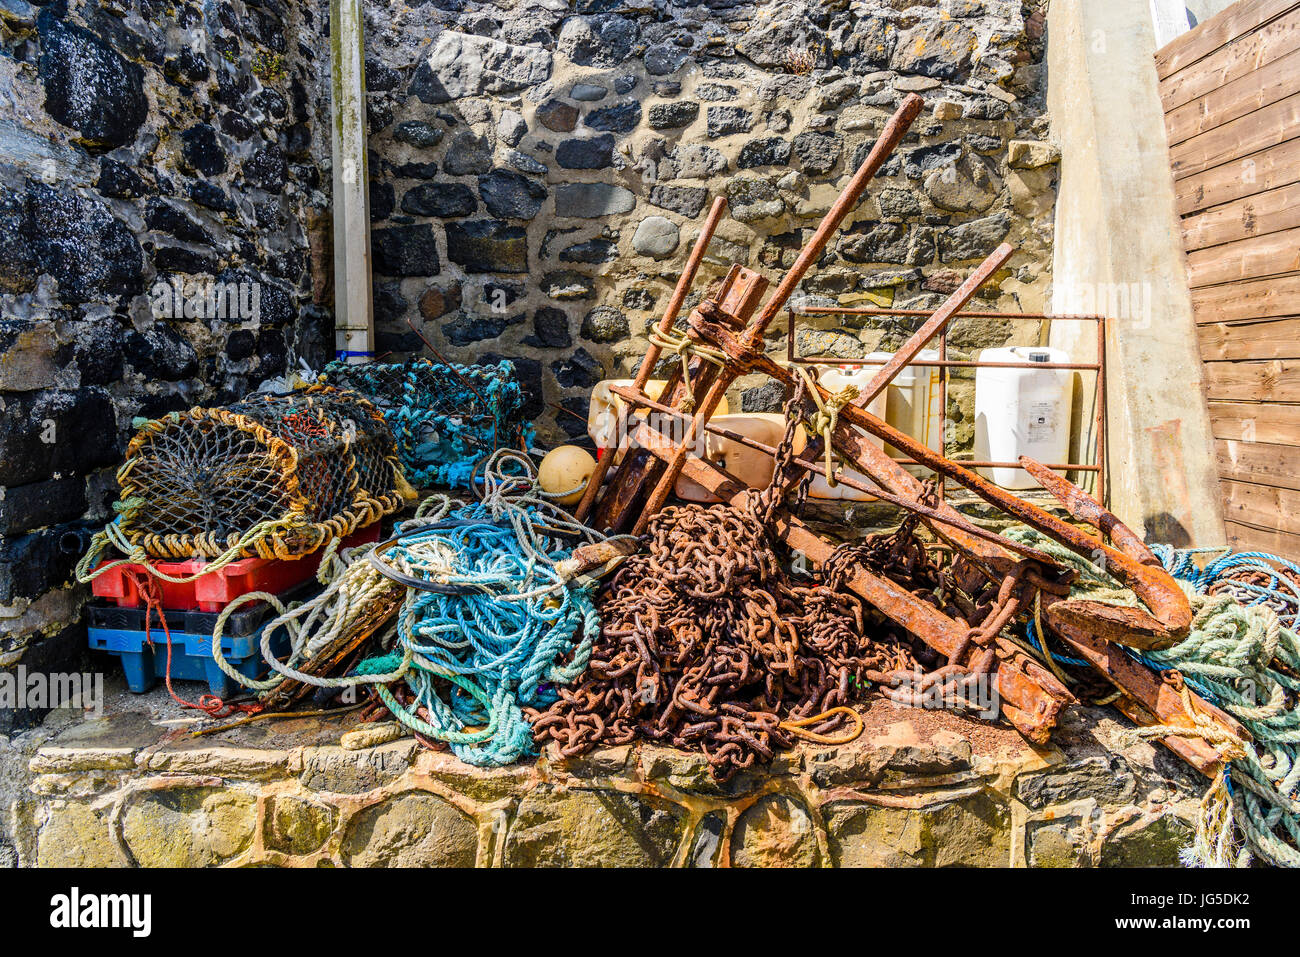 Ketten, Seile, Hummer Käfige und andere Ausrüstung für die Fischerei in einem alten Hafen. Stockfoto